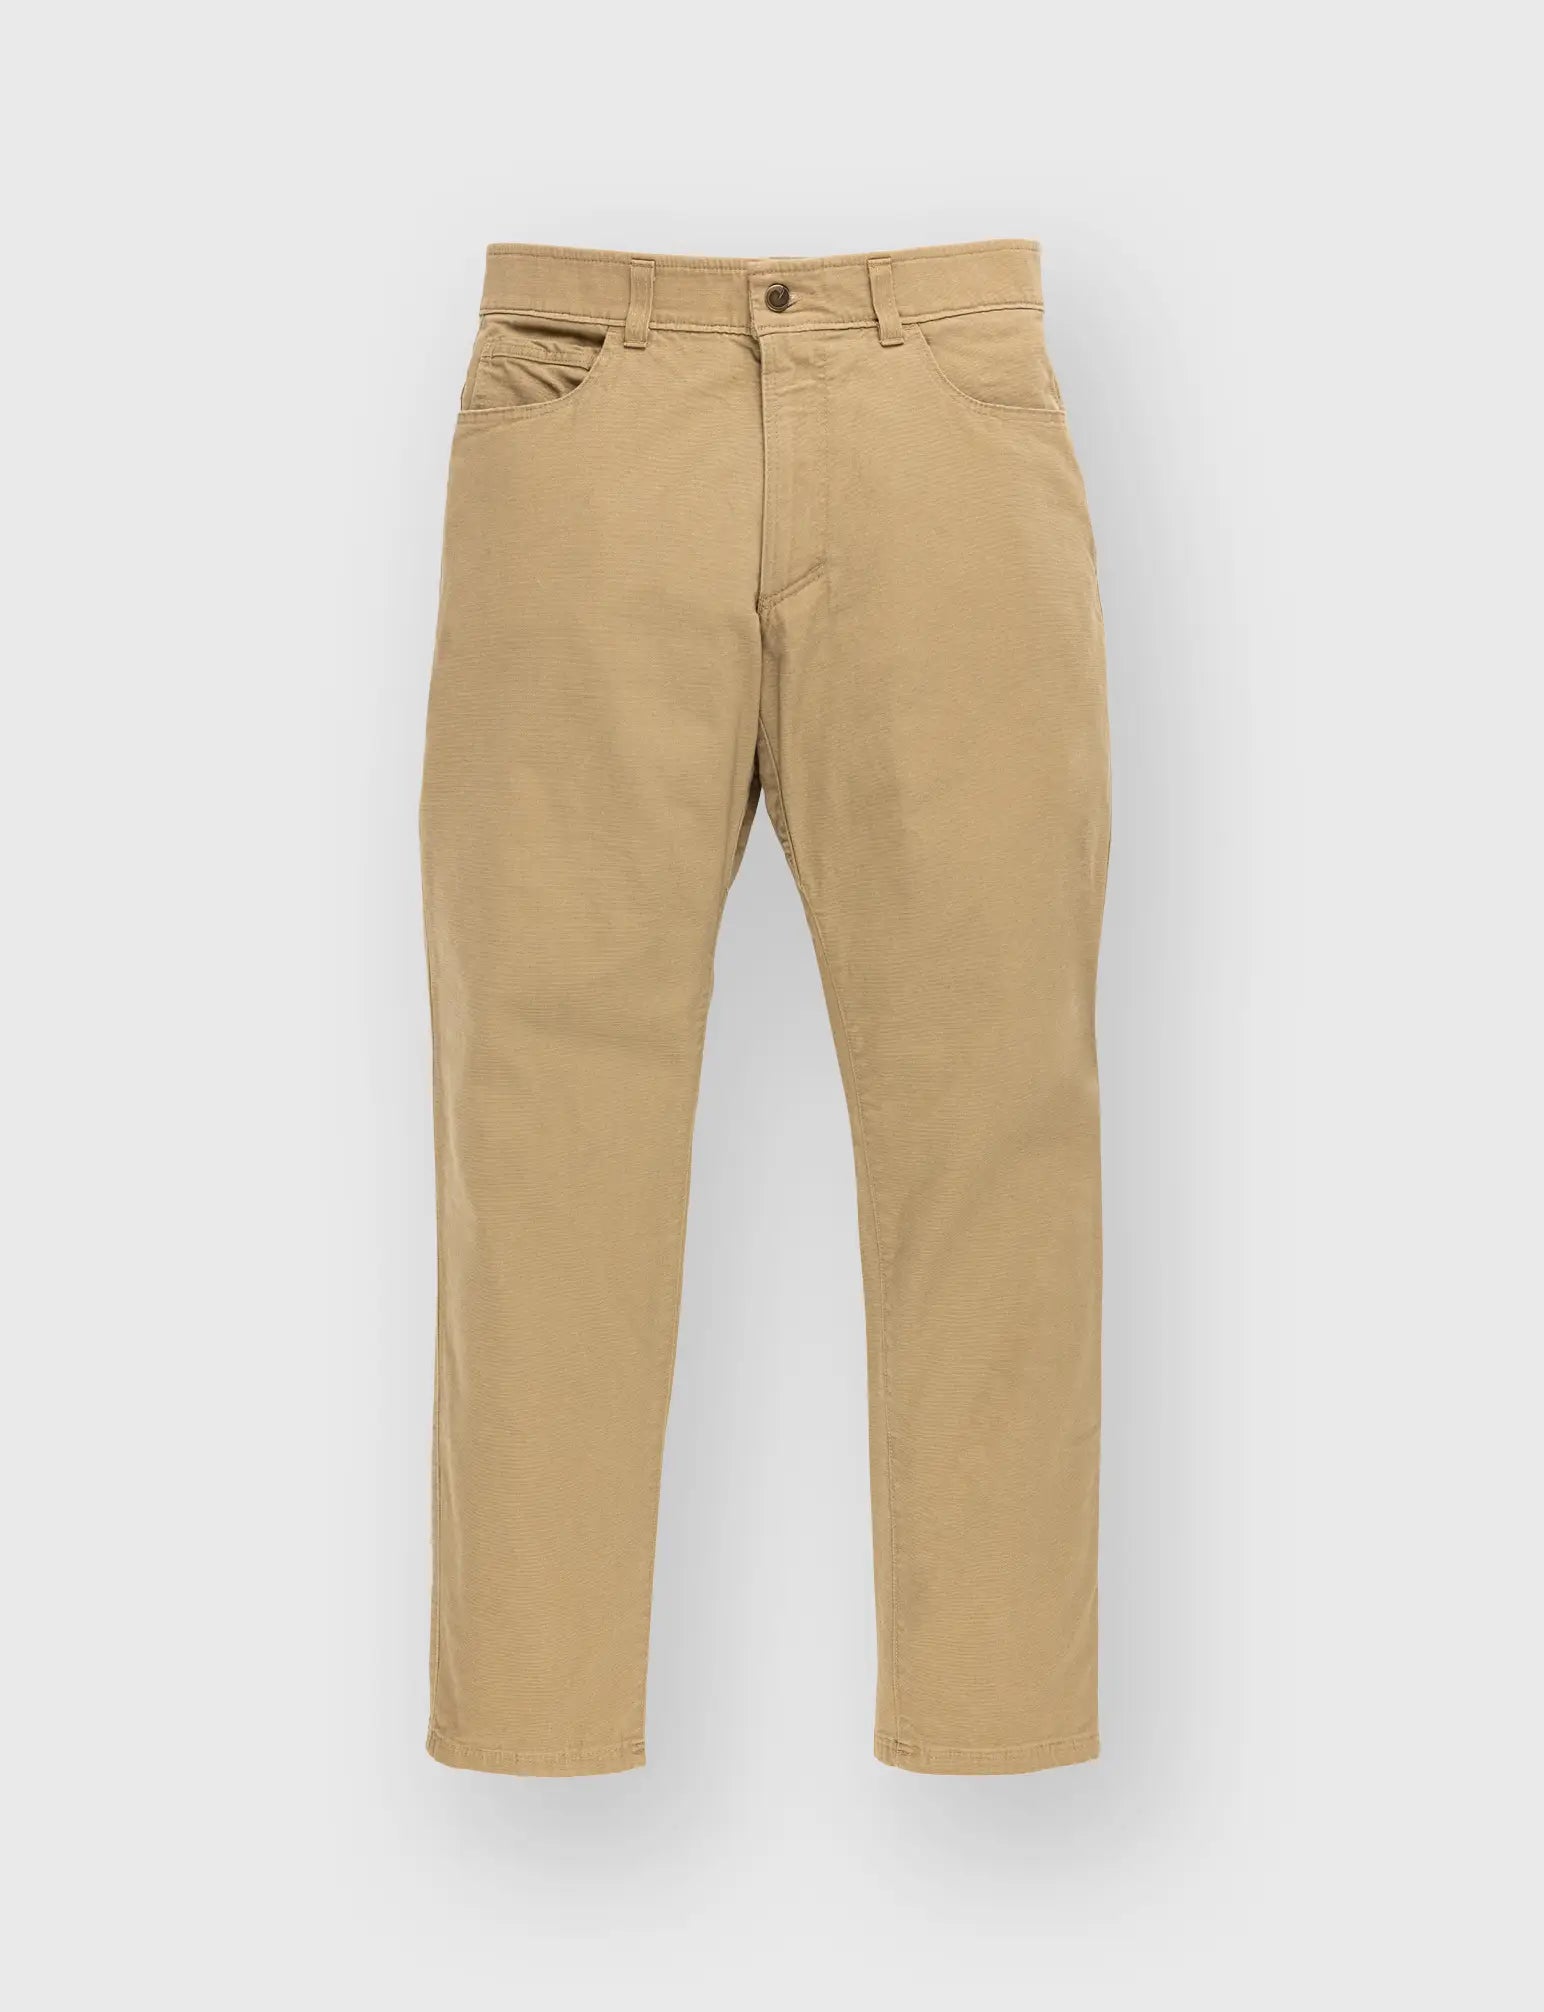 American-made Pants – ORIGIN